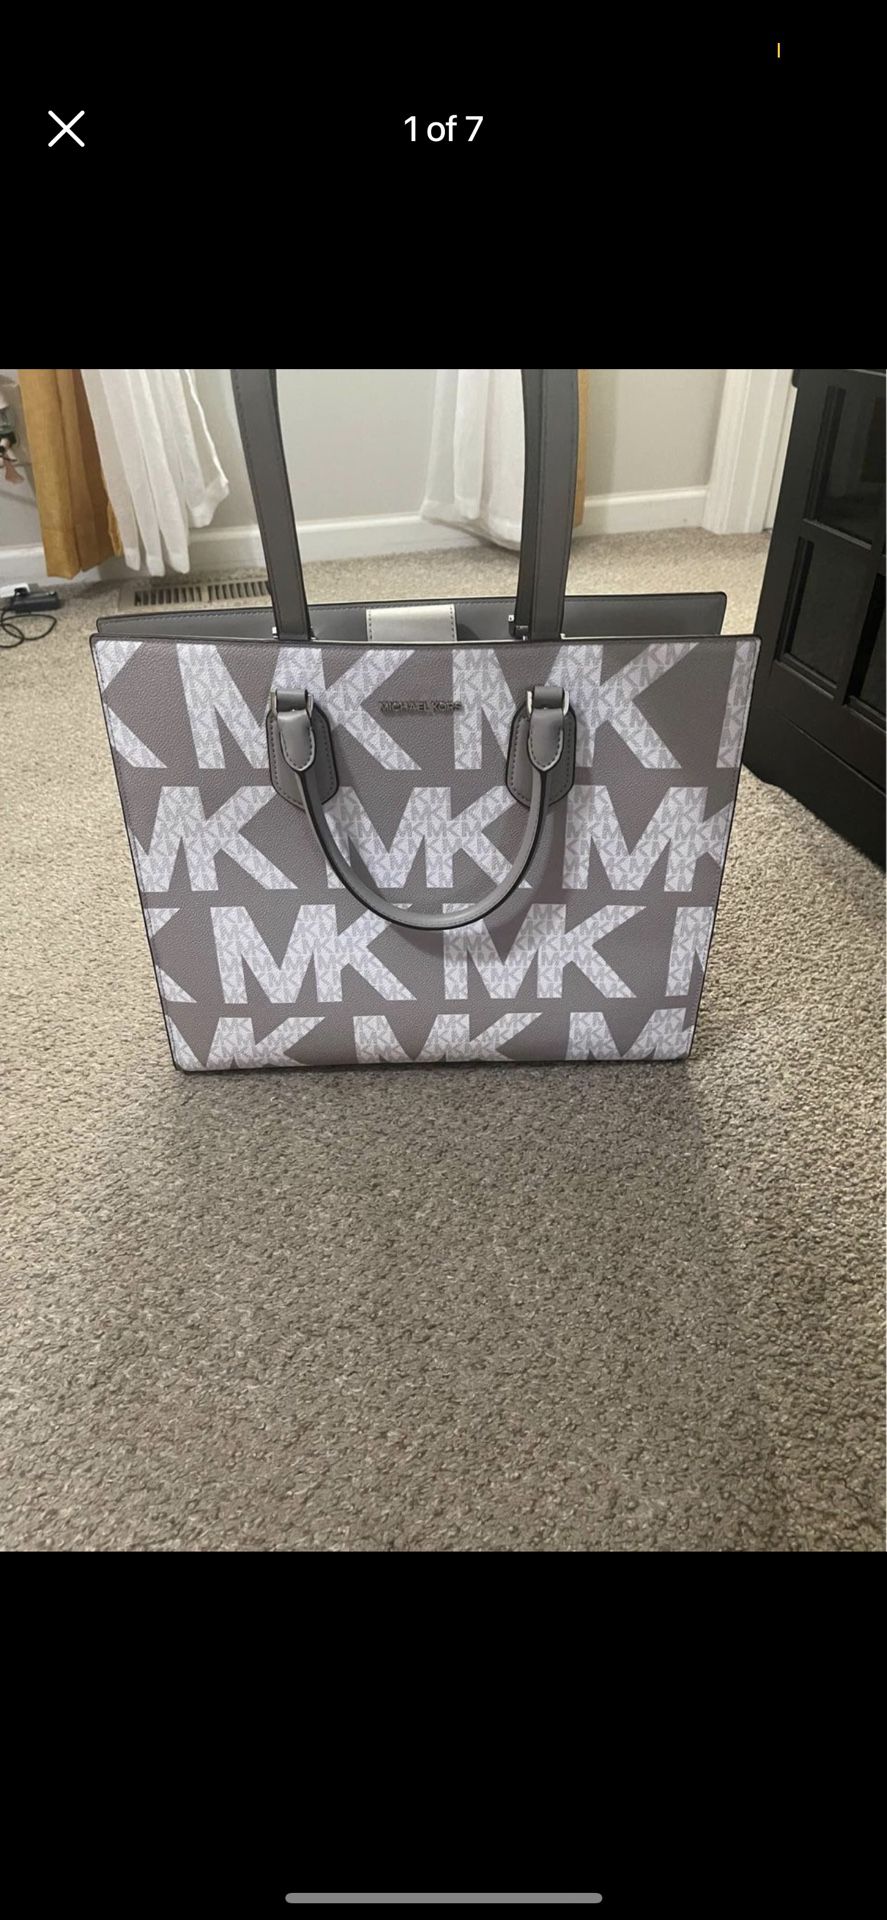 Brand New Large Michael Kors Bag